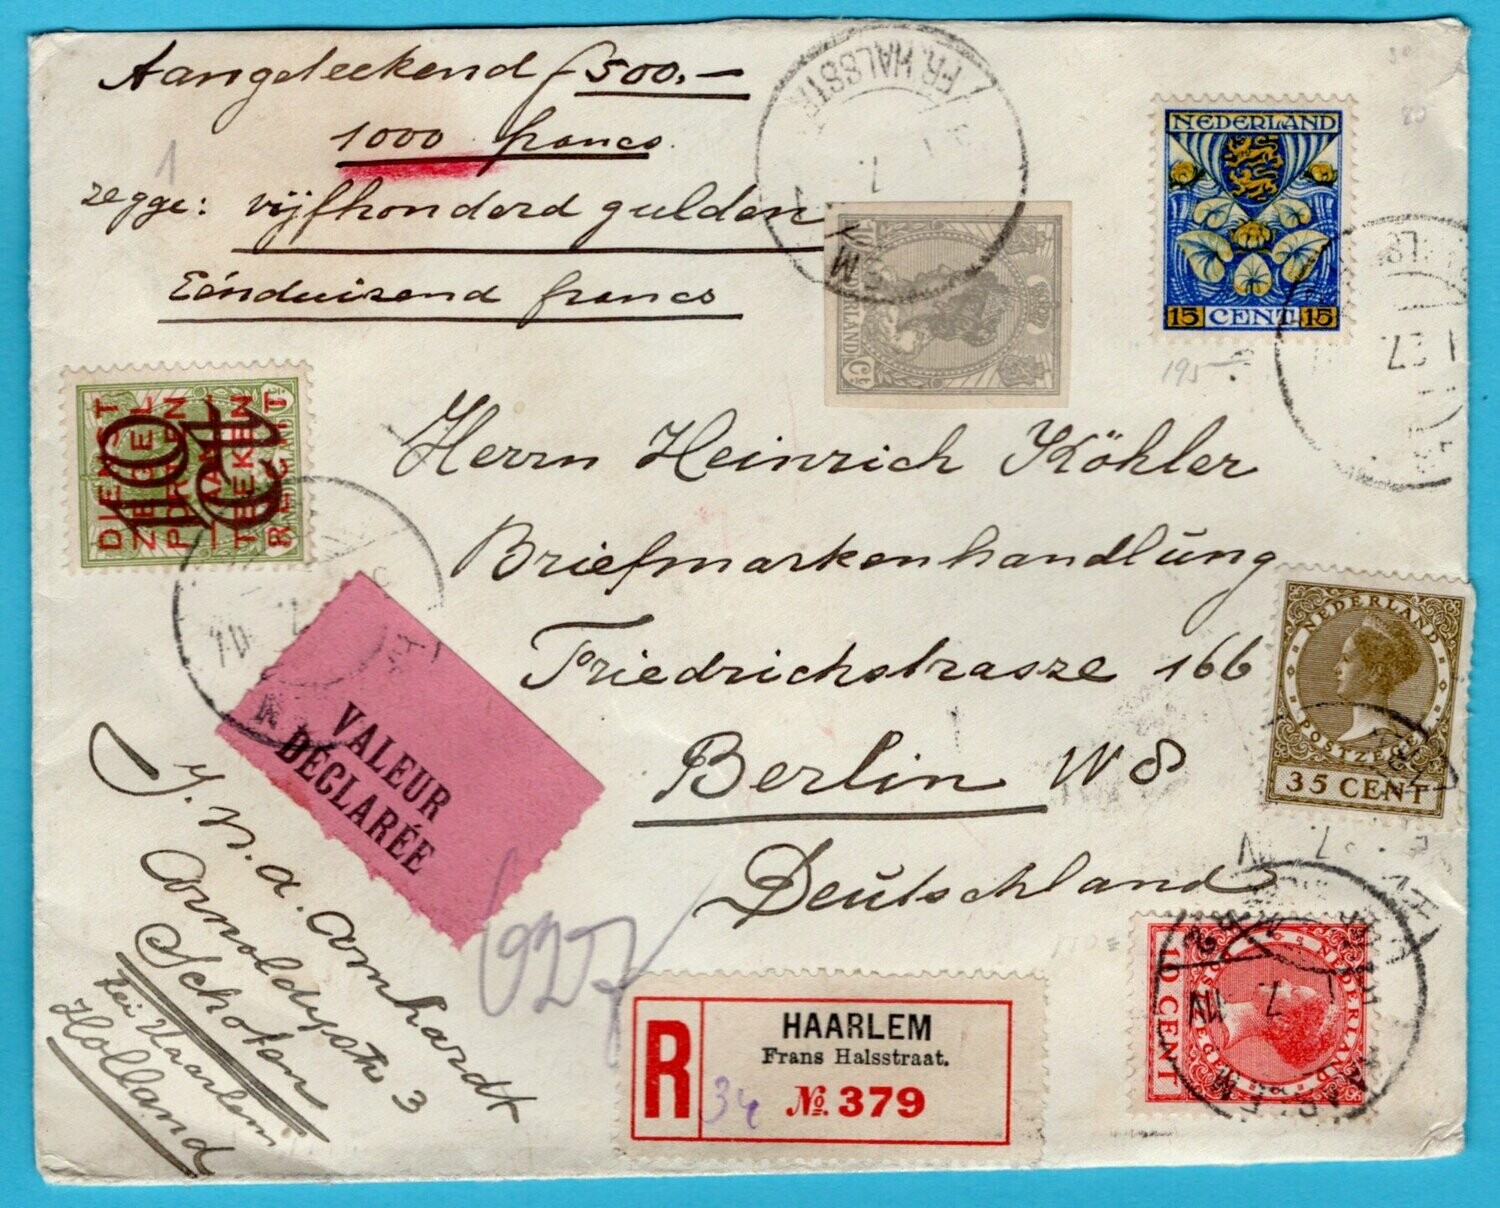 NEDERLAND waardebrief 1927 Haarlem naar Berlijn